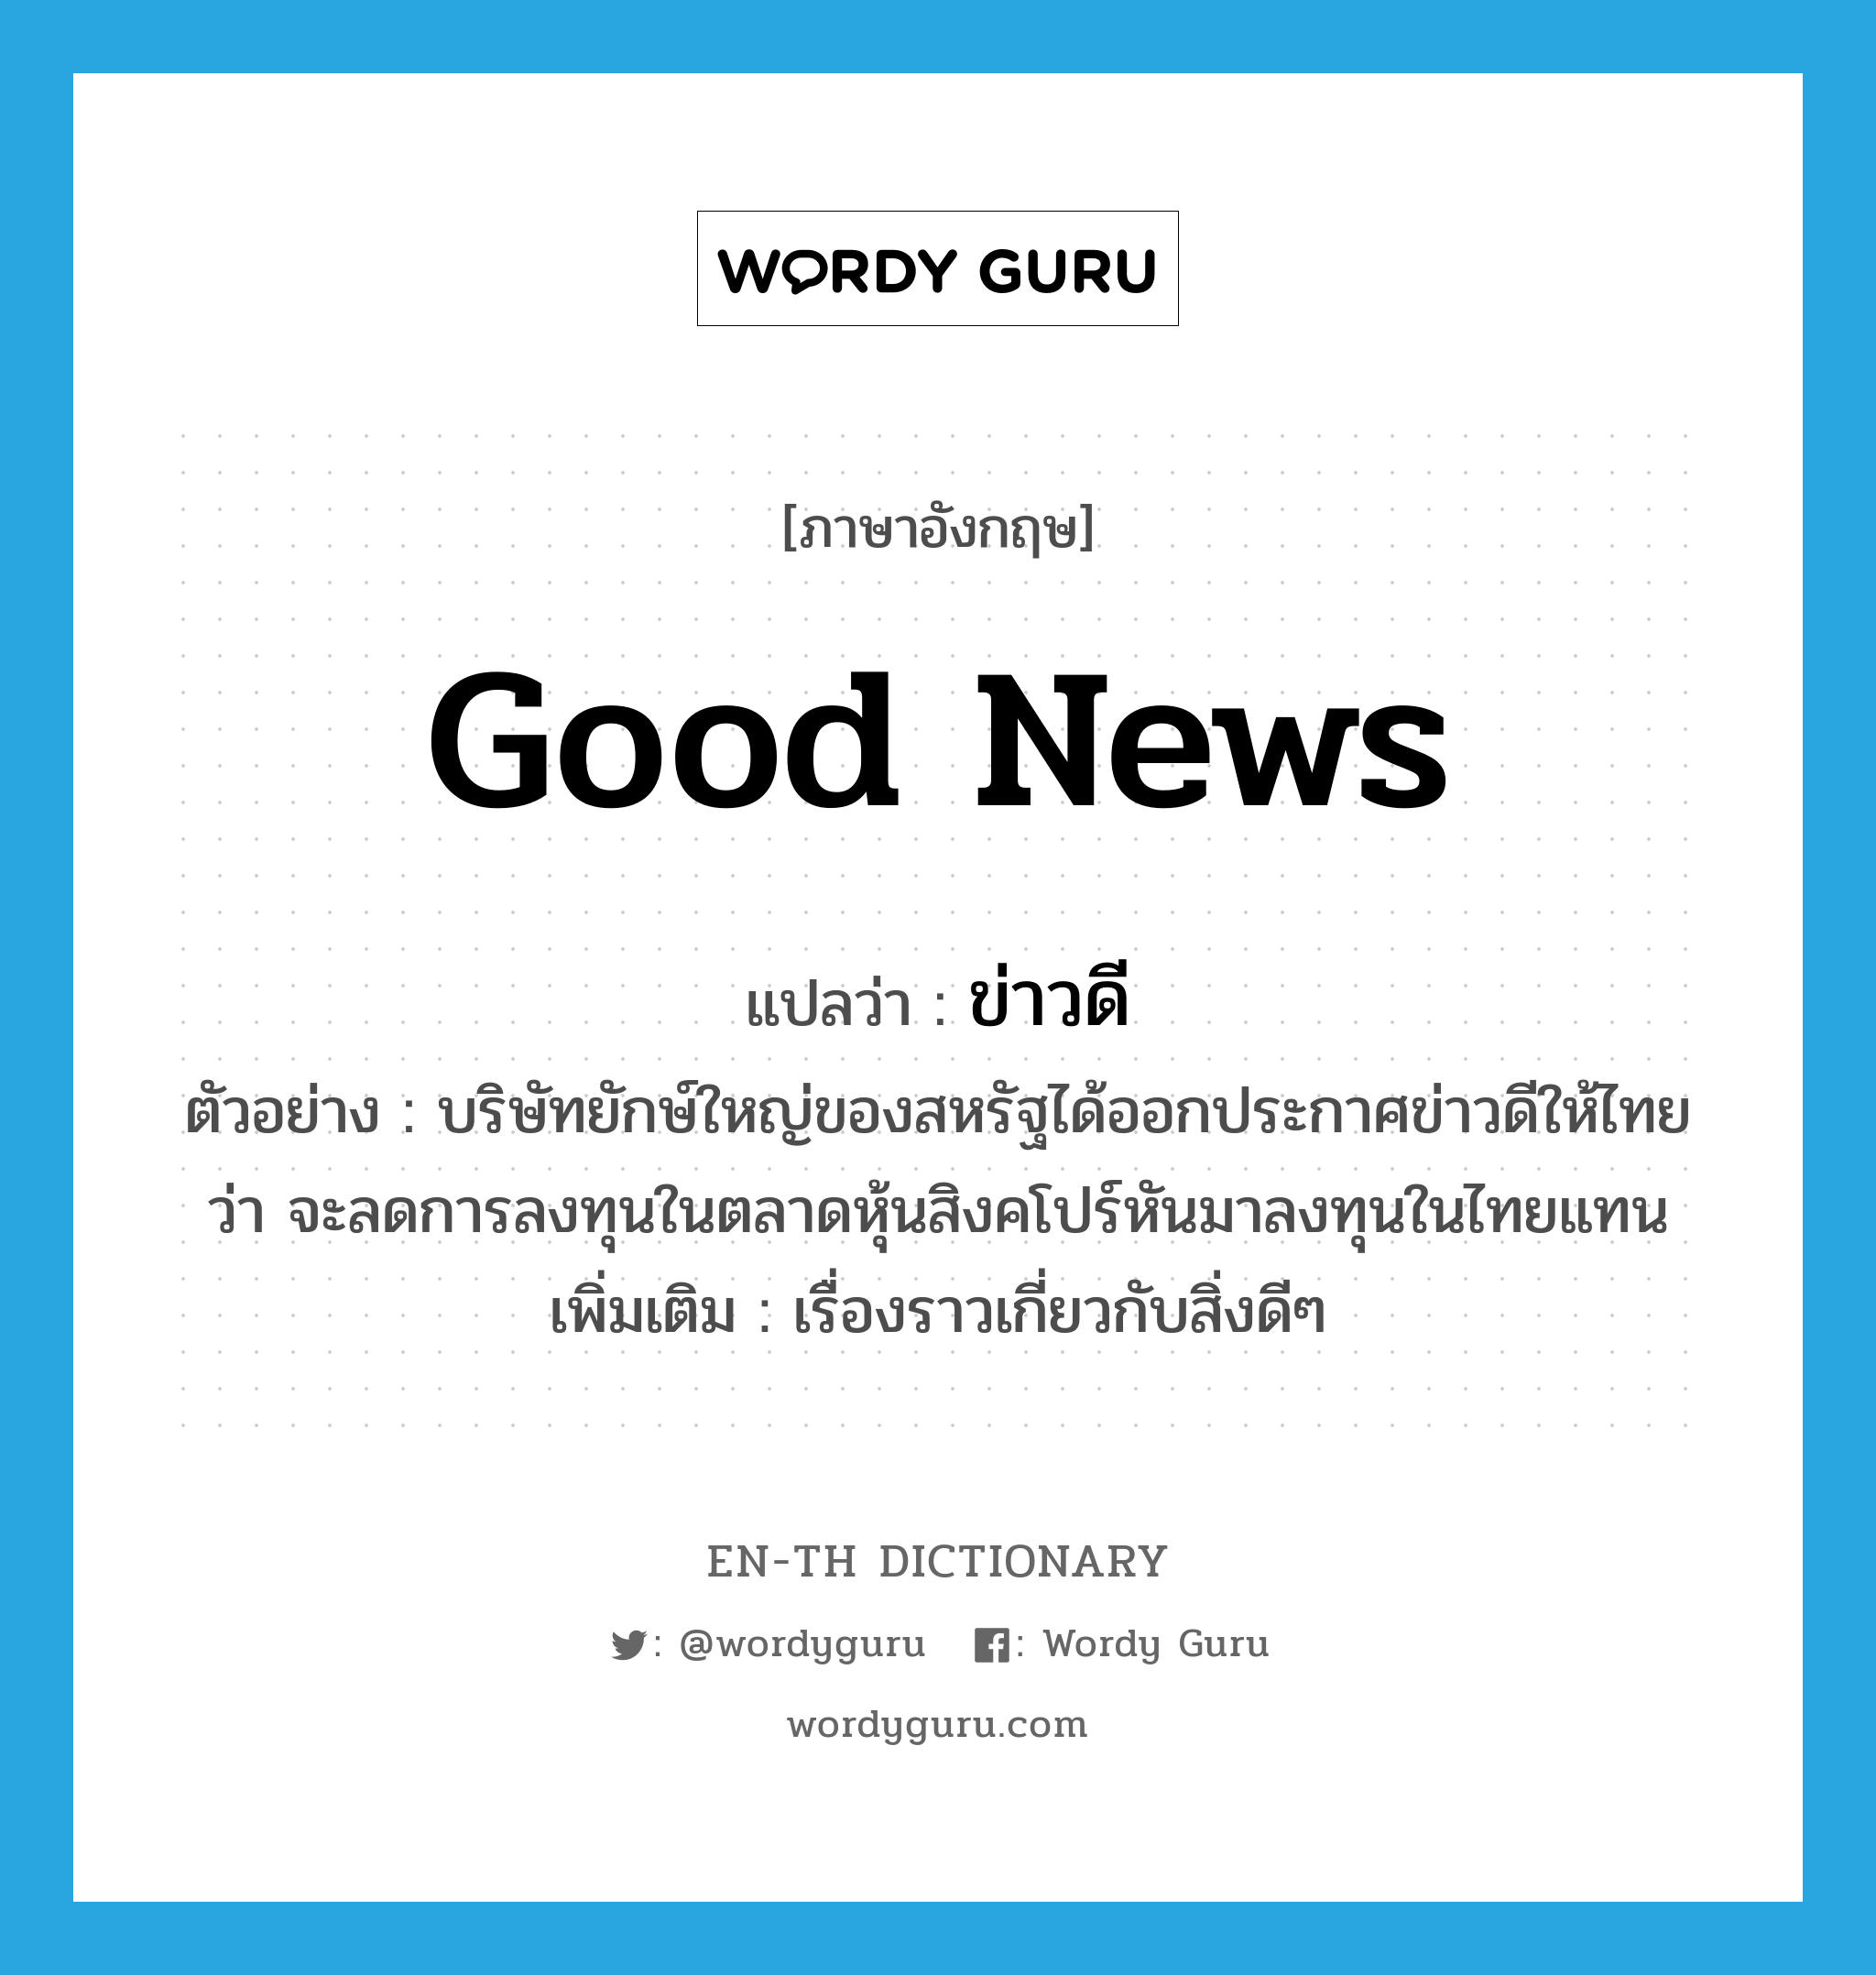 ข่าวดี ภาษาอังกฤษ?, คำศัพท์ภาษาอังกฤษ ข่าวดี แปลว่า good news ประเภท N ตัวอย่าง บริษัทยักษ์ใหญ่ของสหรัฐได้ออกประกาศข่าวดีให้ไทยว่า จะลดการลงทุนในตลาดหุ้นสิงคโปร์หันมาลงทุนในไทยแทน เพิ่มเติม เรื่องราวเกี่ยวกับสิ่งดีๆ หมวด N